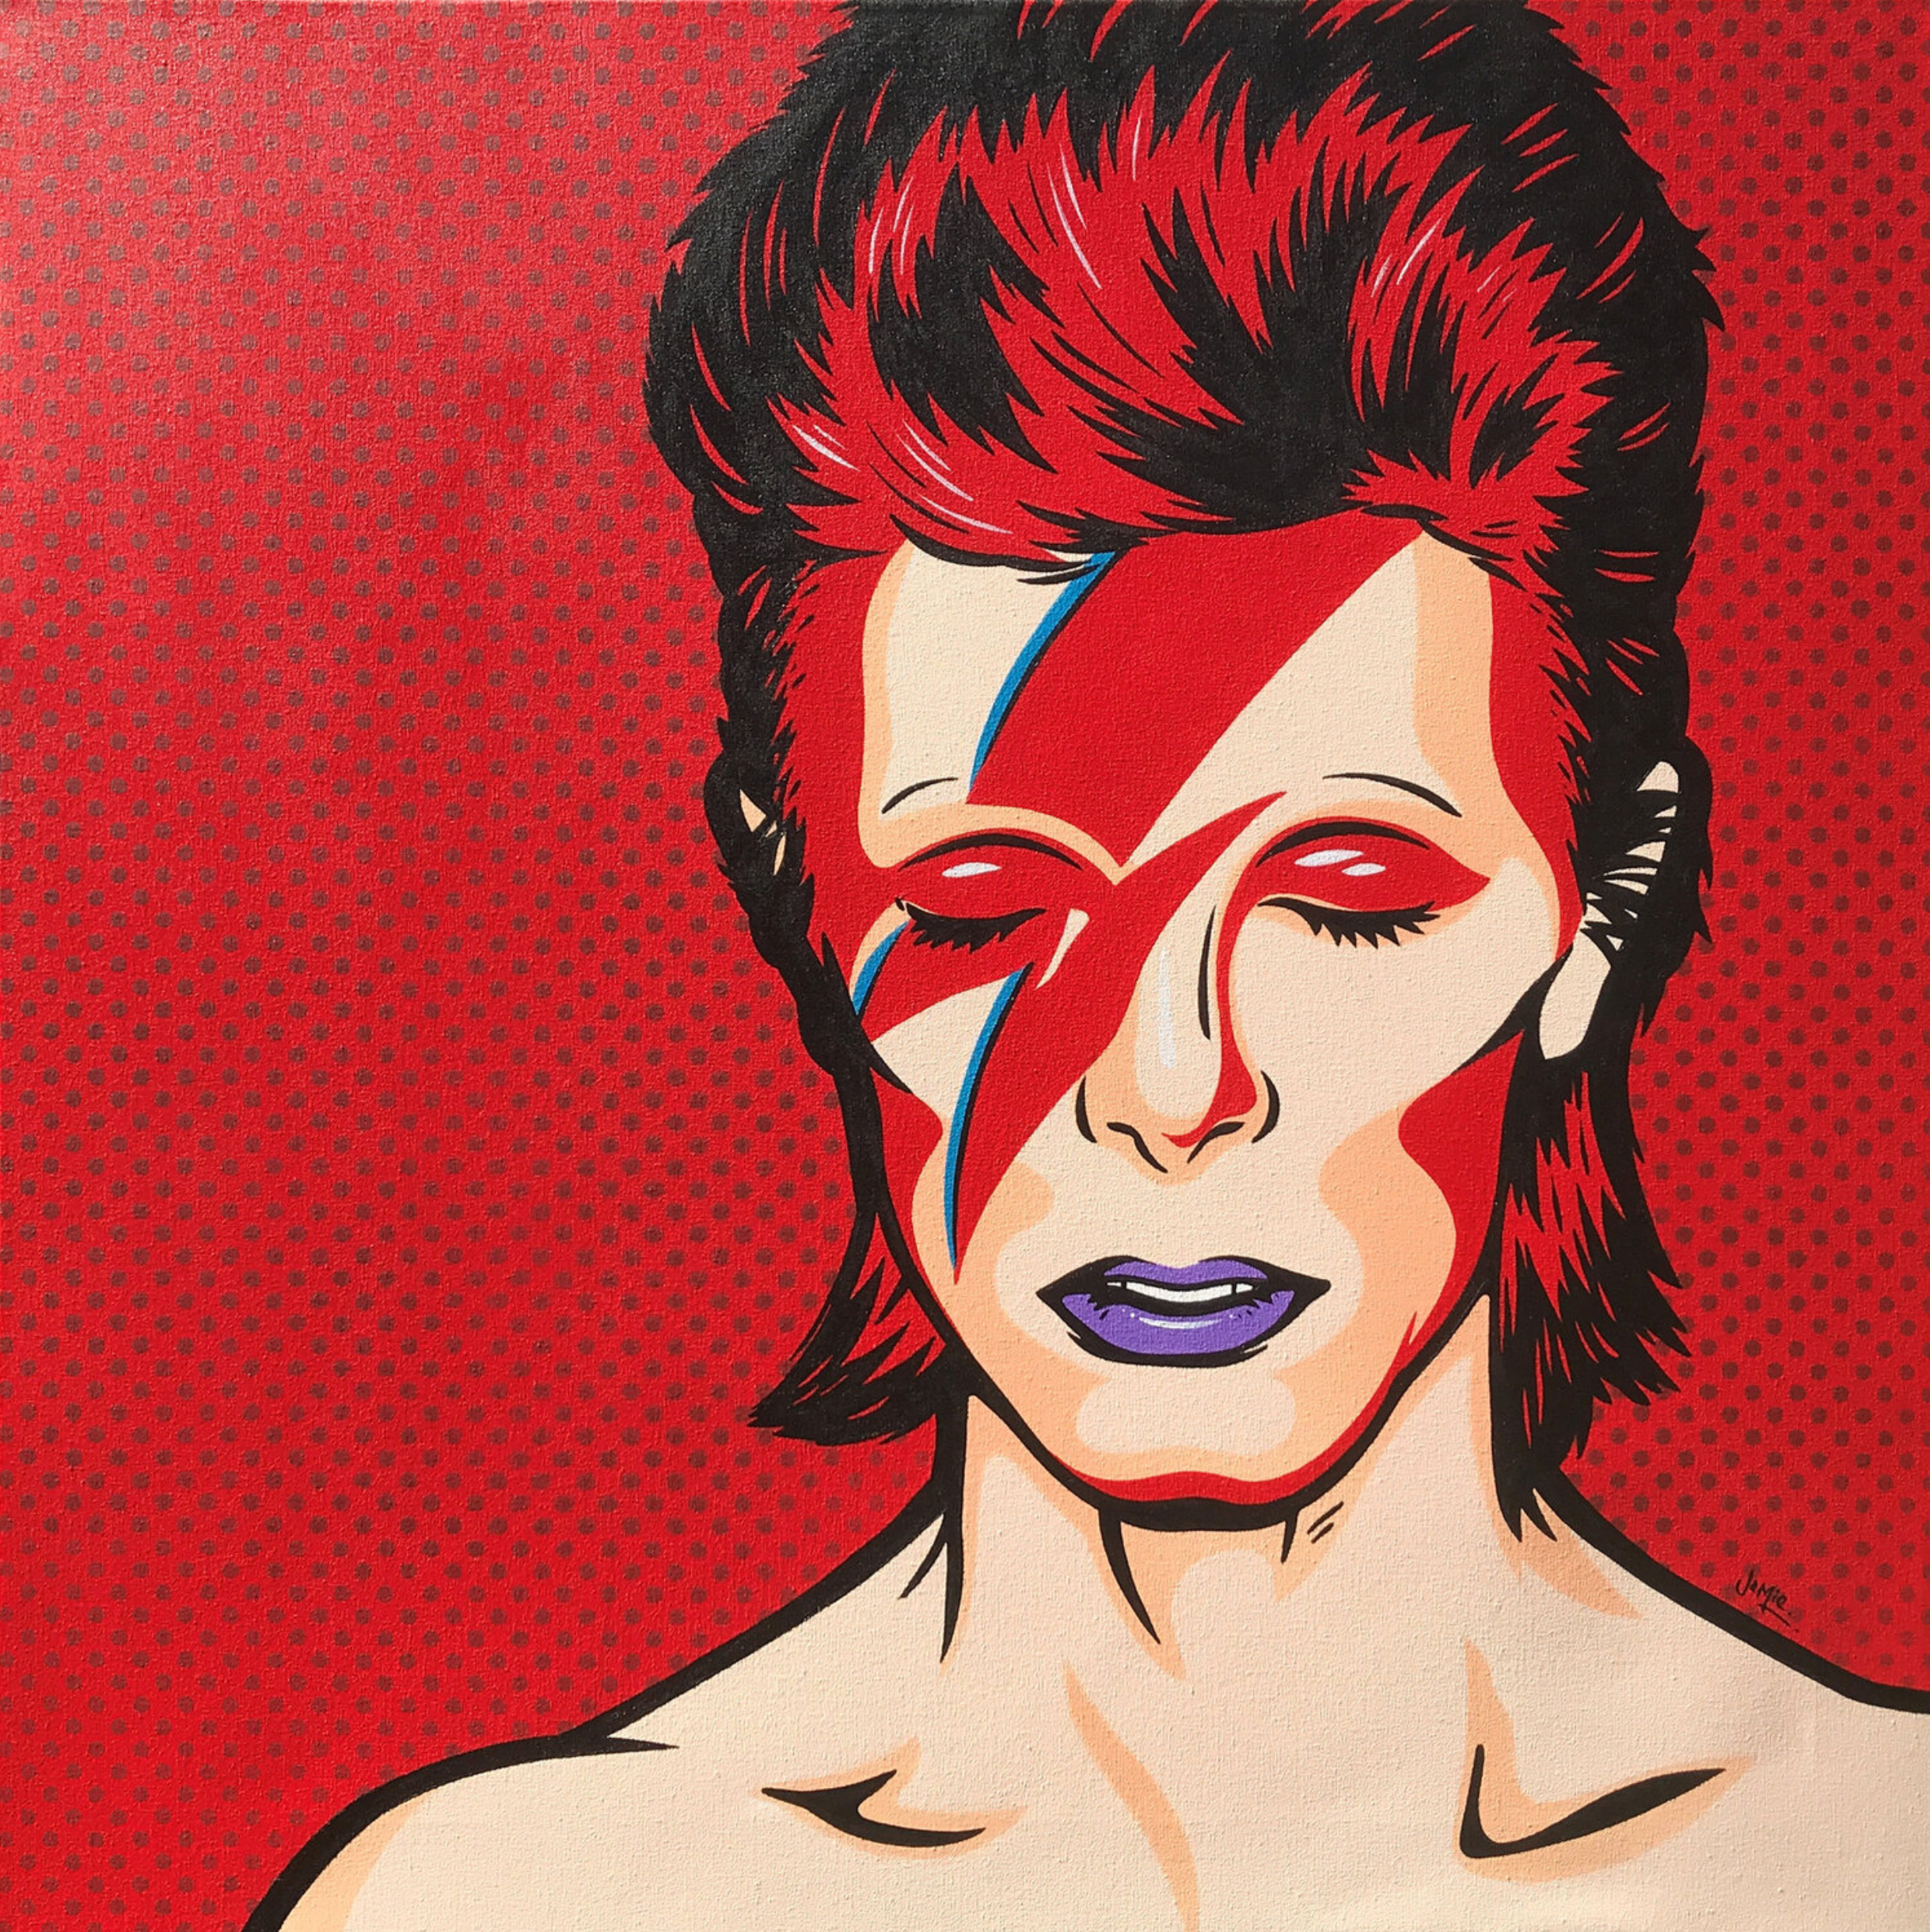 Pintura pop art estilo cómic "Ziggy" de Jamie Lee con diseño original, David Bowie como Aladdin Sane sobre fondo rojo. Versión pop art pintada a mano de la legendaria portada del álbum.